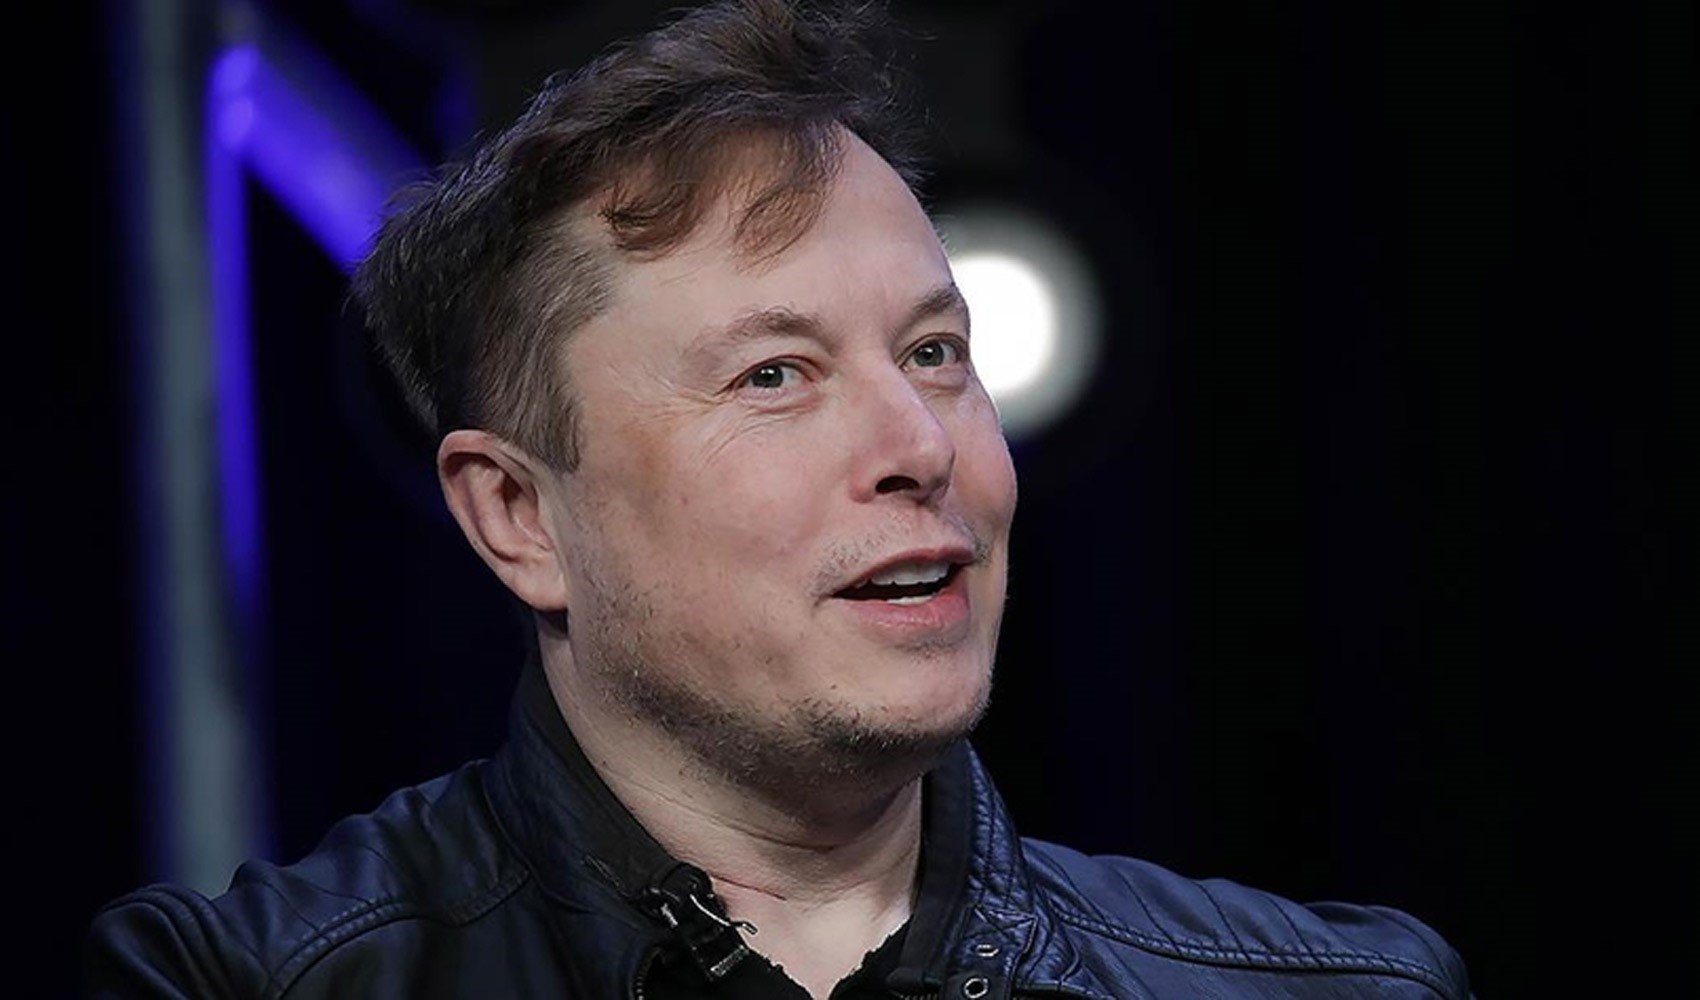 SpaceX'in eski çalışanları 'haksız yere' kovuldukları gerekçesiyle Elon Musk'ı dava etti